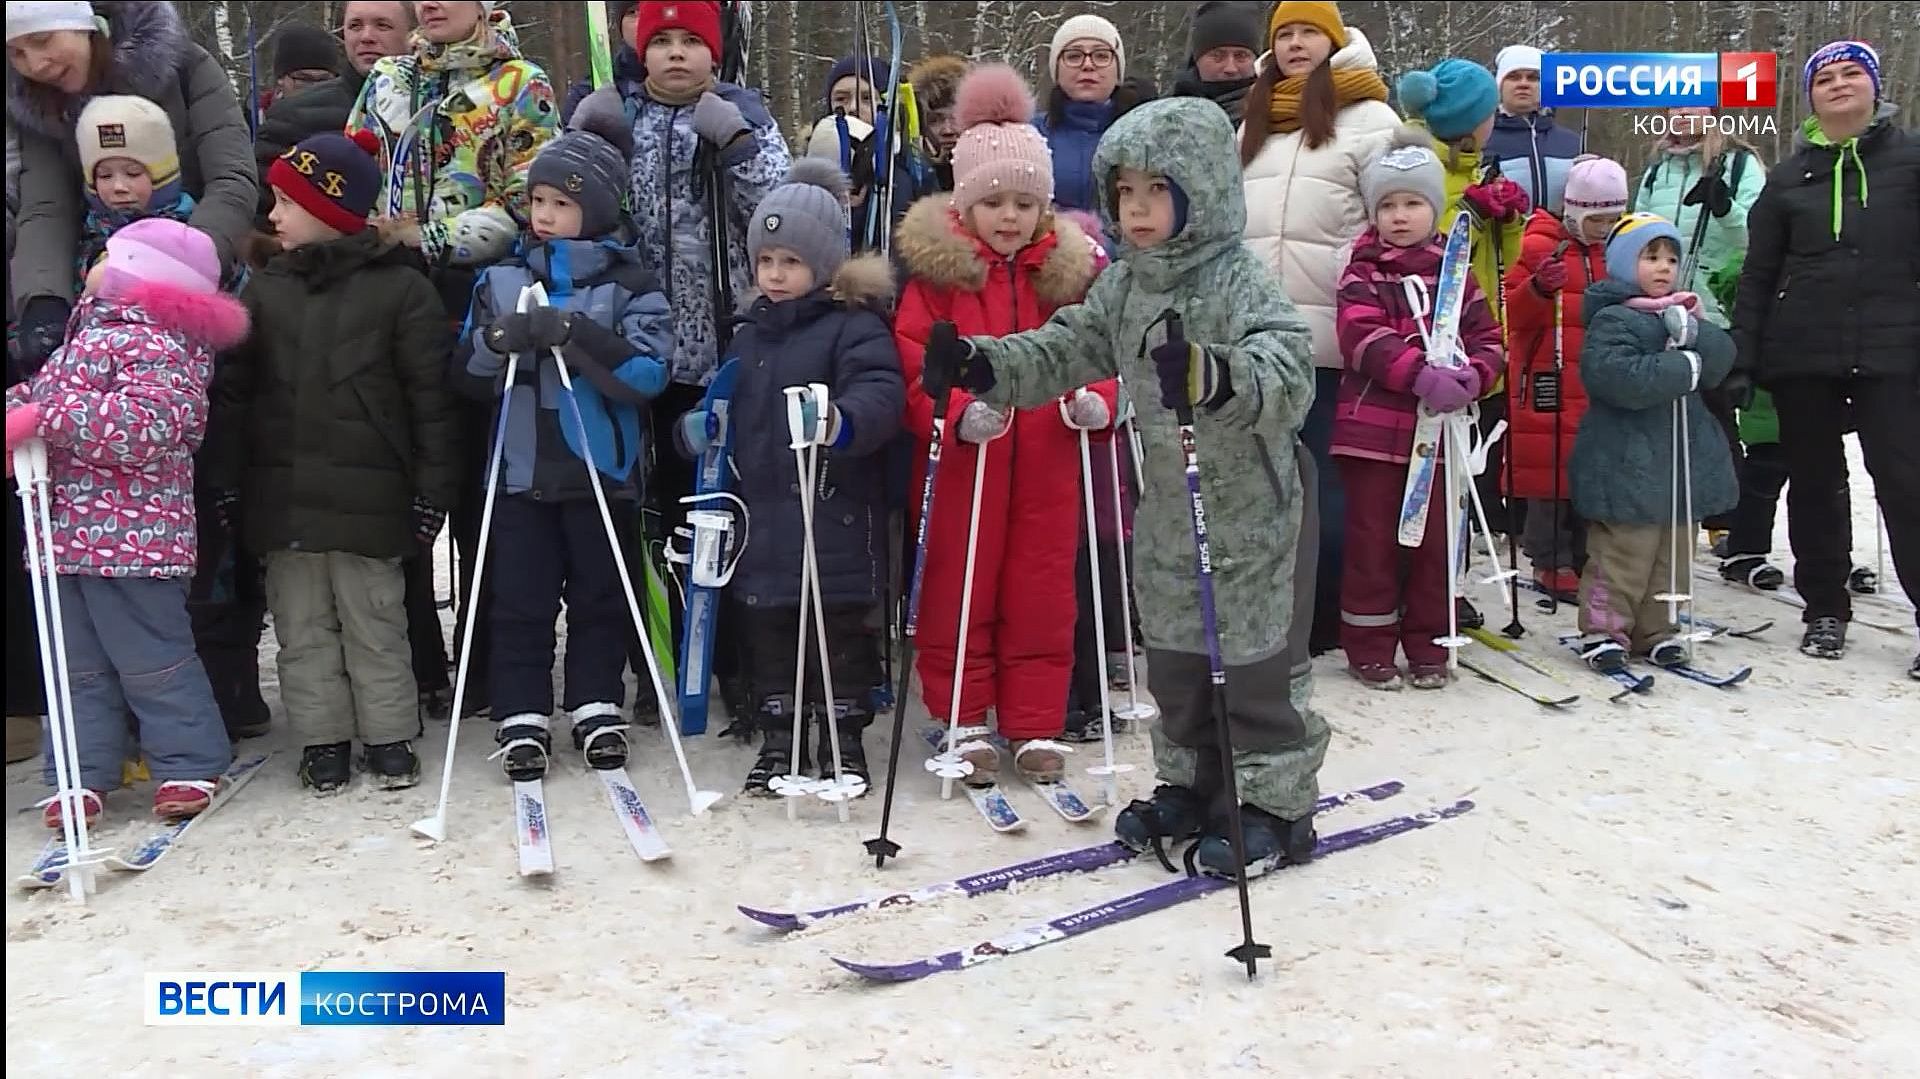 Костромские детсадовцы массово встали на лыжи